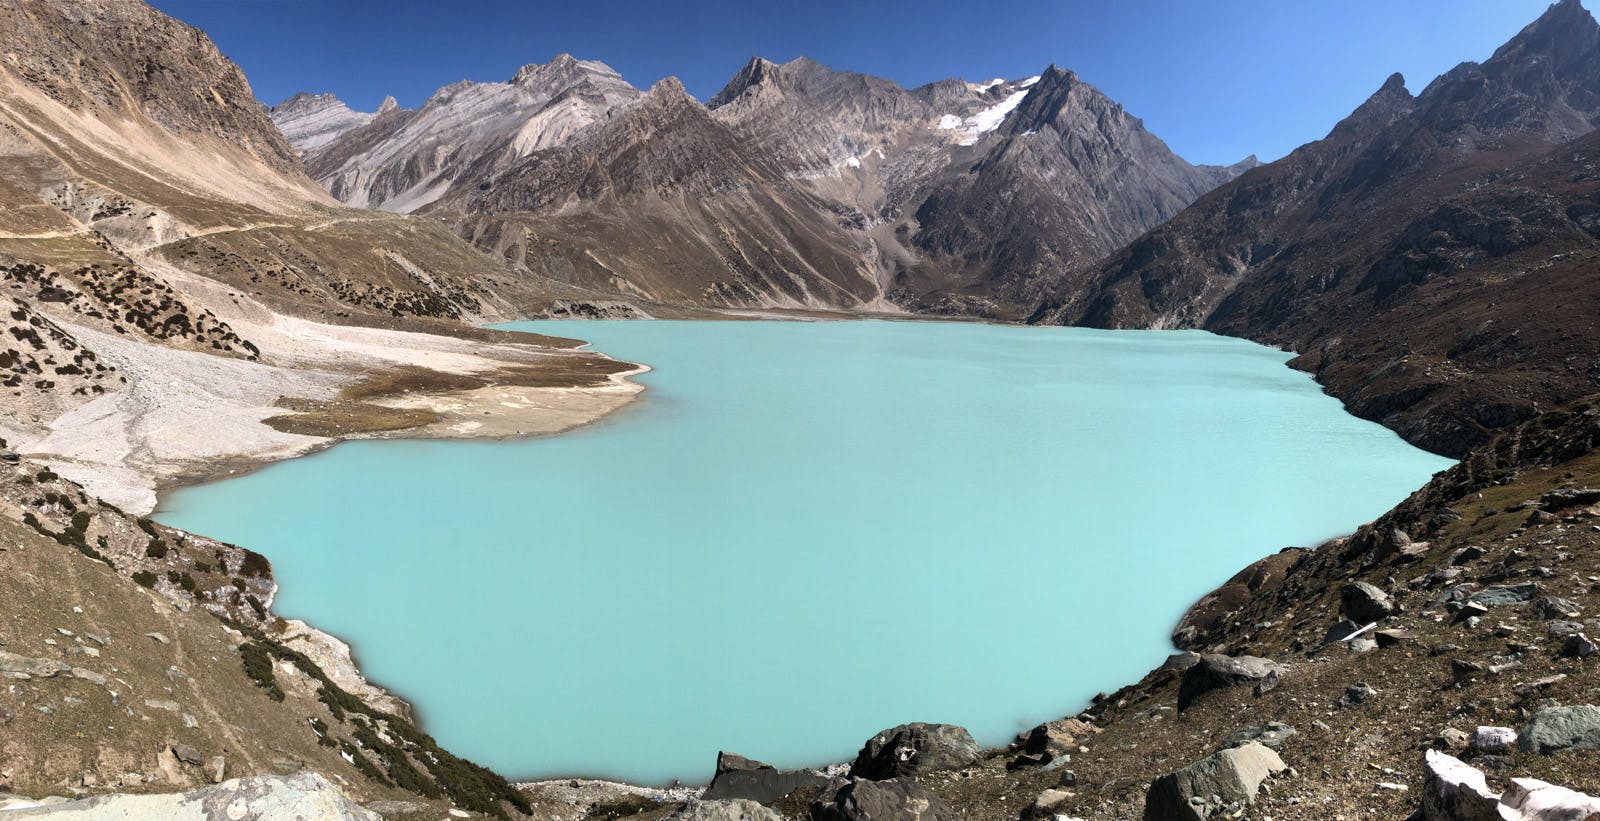 Sheshnag Lake Trek The Most Popular Day Trek in the Kashmir Valley